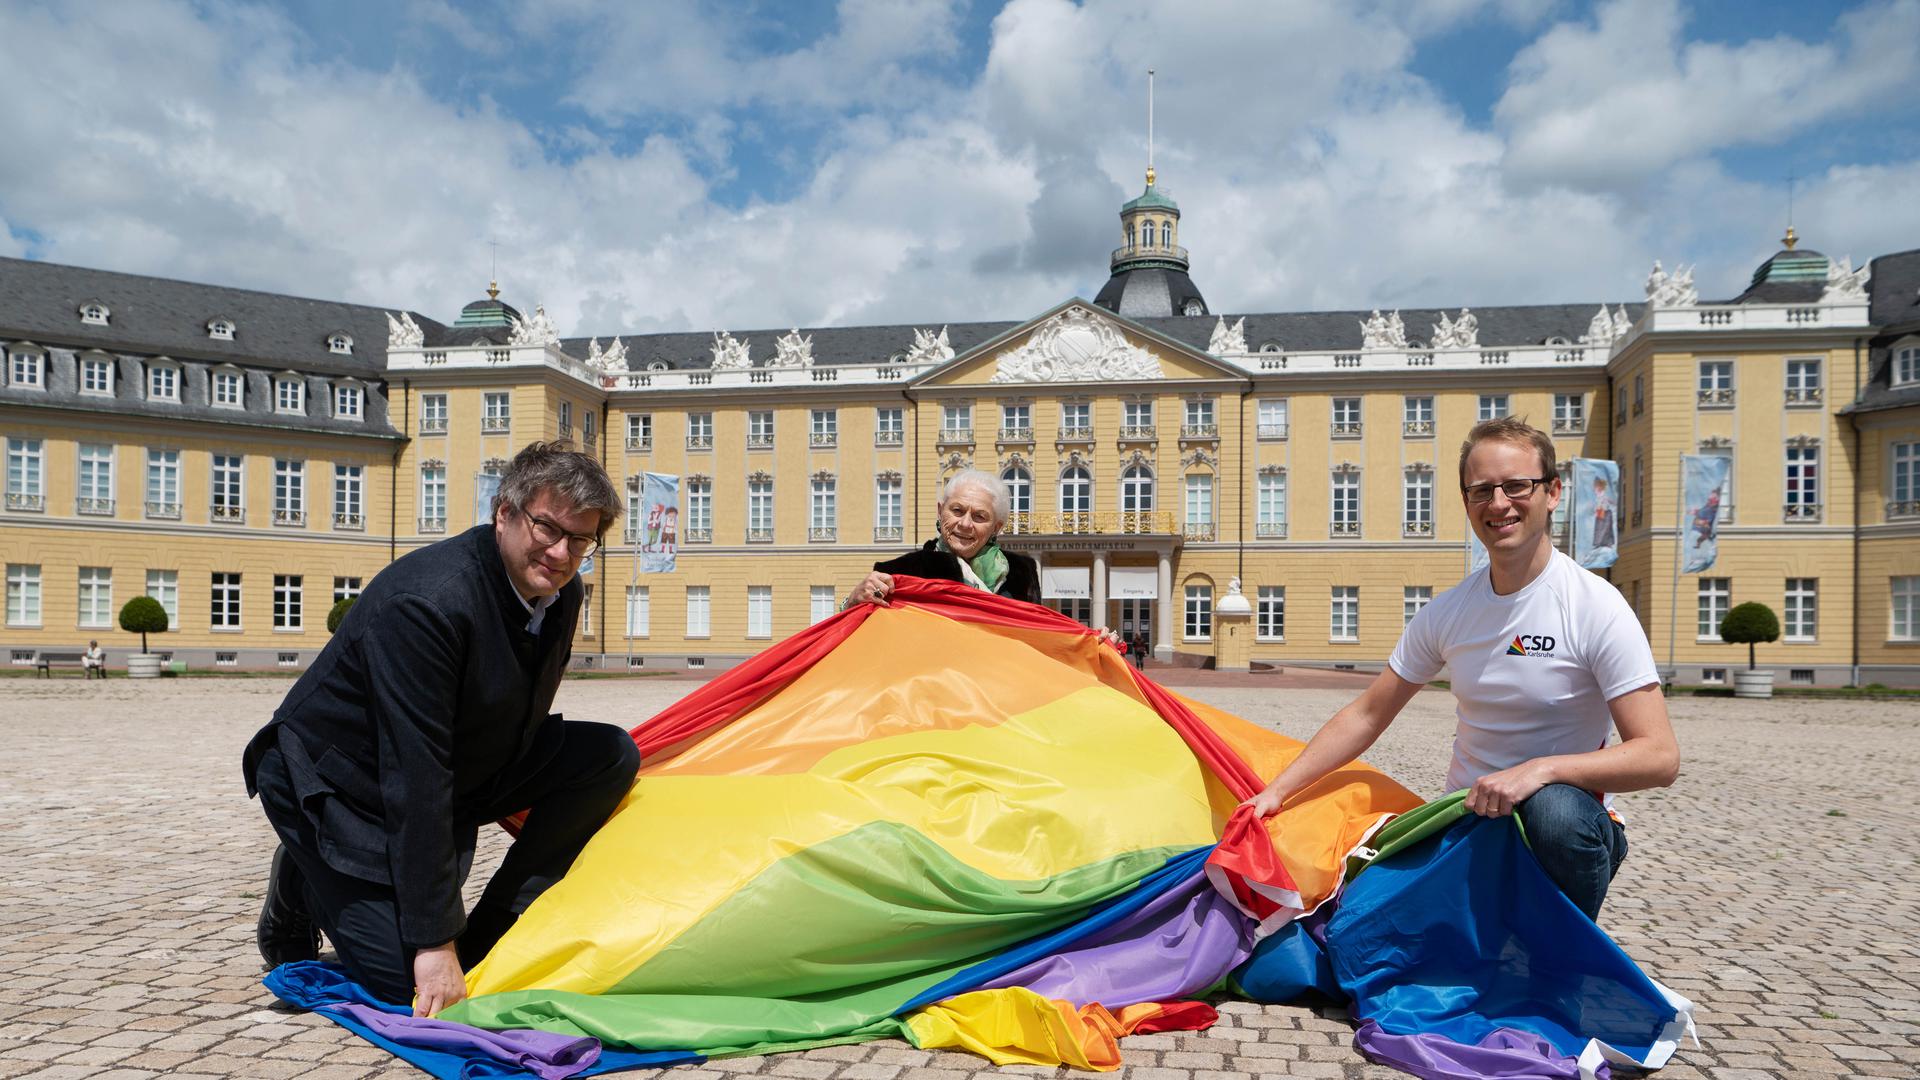 Am 5. Juni hisst das Badische Landesmuseum wieder die Regenbogenflagge auf dem Karlsruher Schlossturm. Gerlinde Hämmerle (Mitte) ist Schirmherrin des diesjährigen Christopher Street Days und hier mit Museumsdirektor Eckart Köhne und CSD-Organisator Karsten Kremer zu sehen.